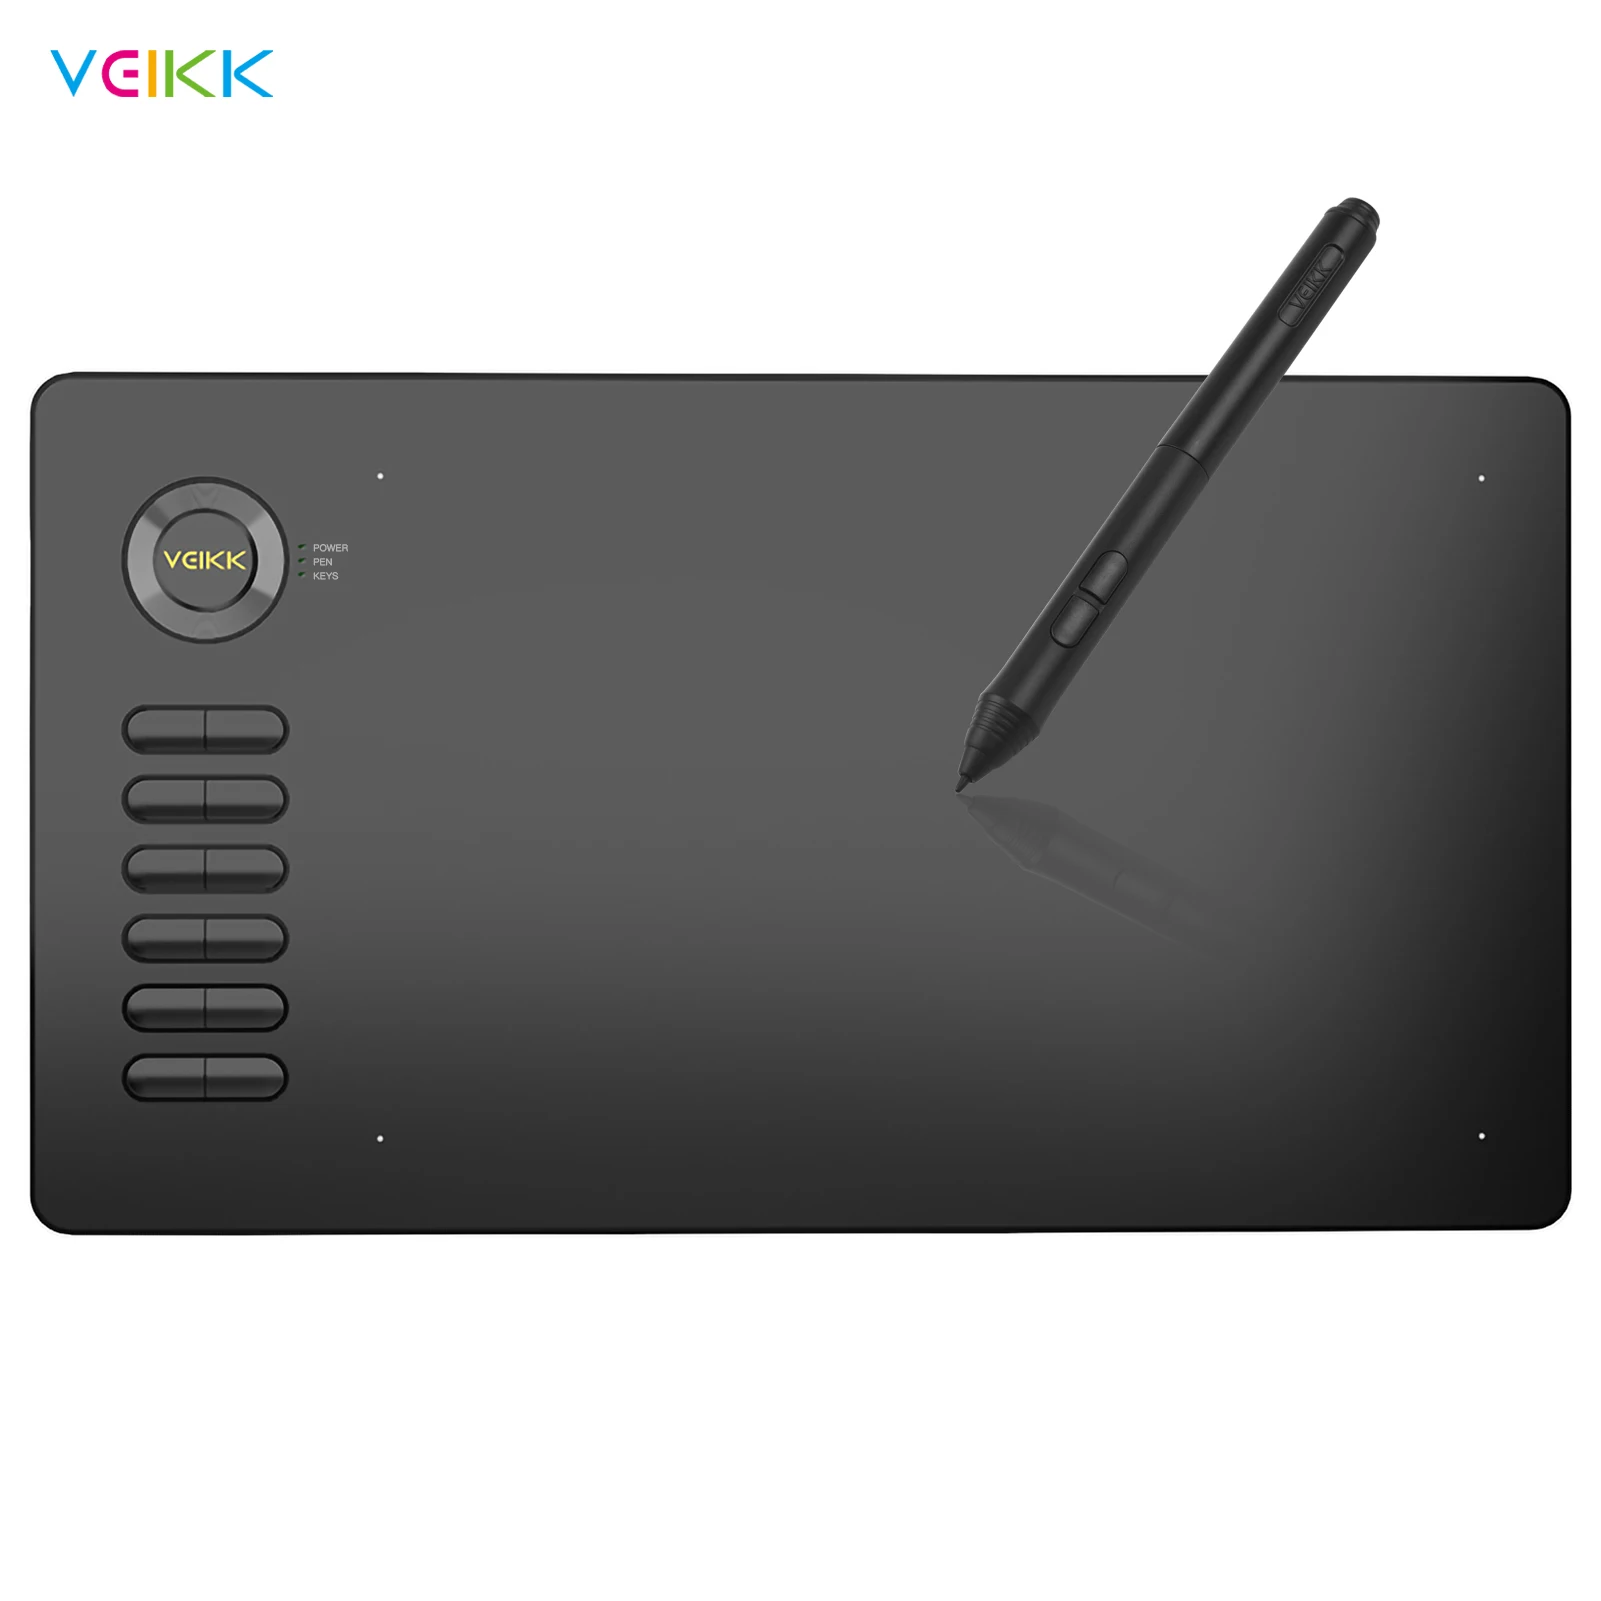 

Графический планшет для рисования VEIKK A15, 10x6 дюймов, 8192 уровня, ручка без батареи, поддержка цифрового графического планшета Android